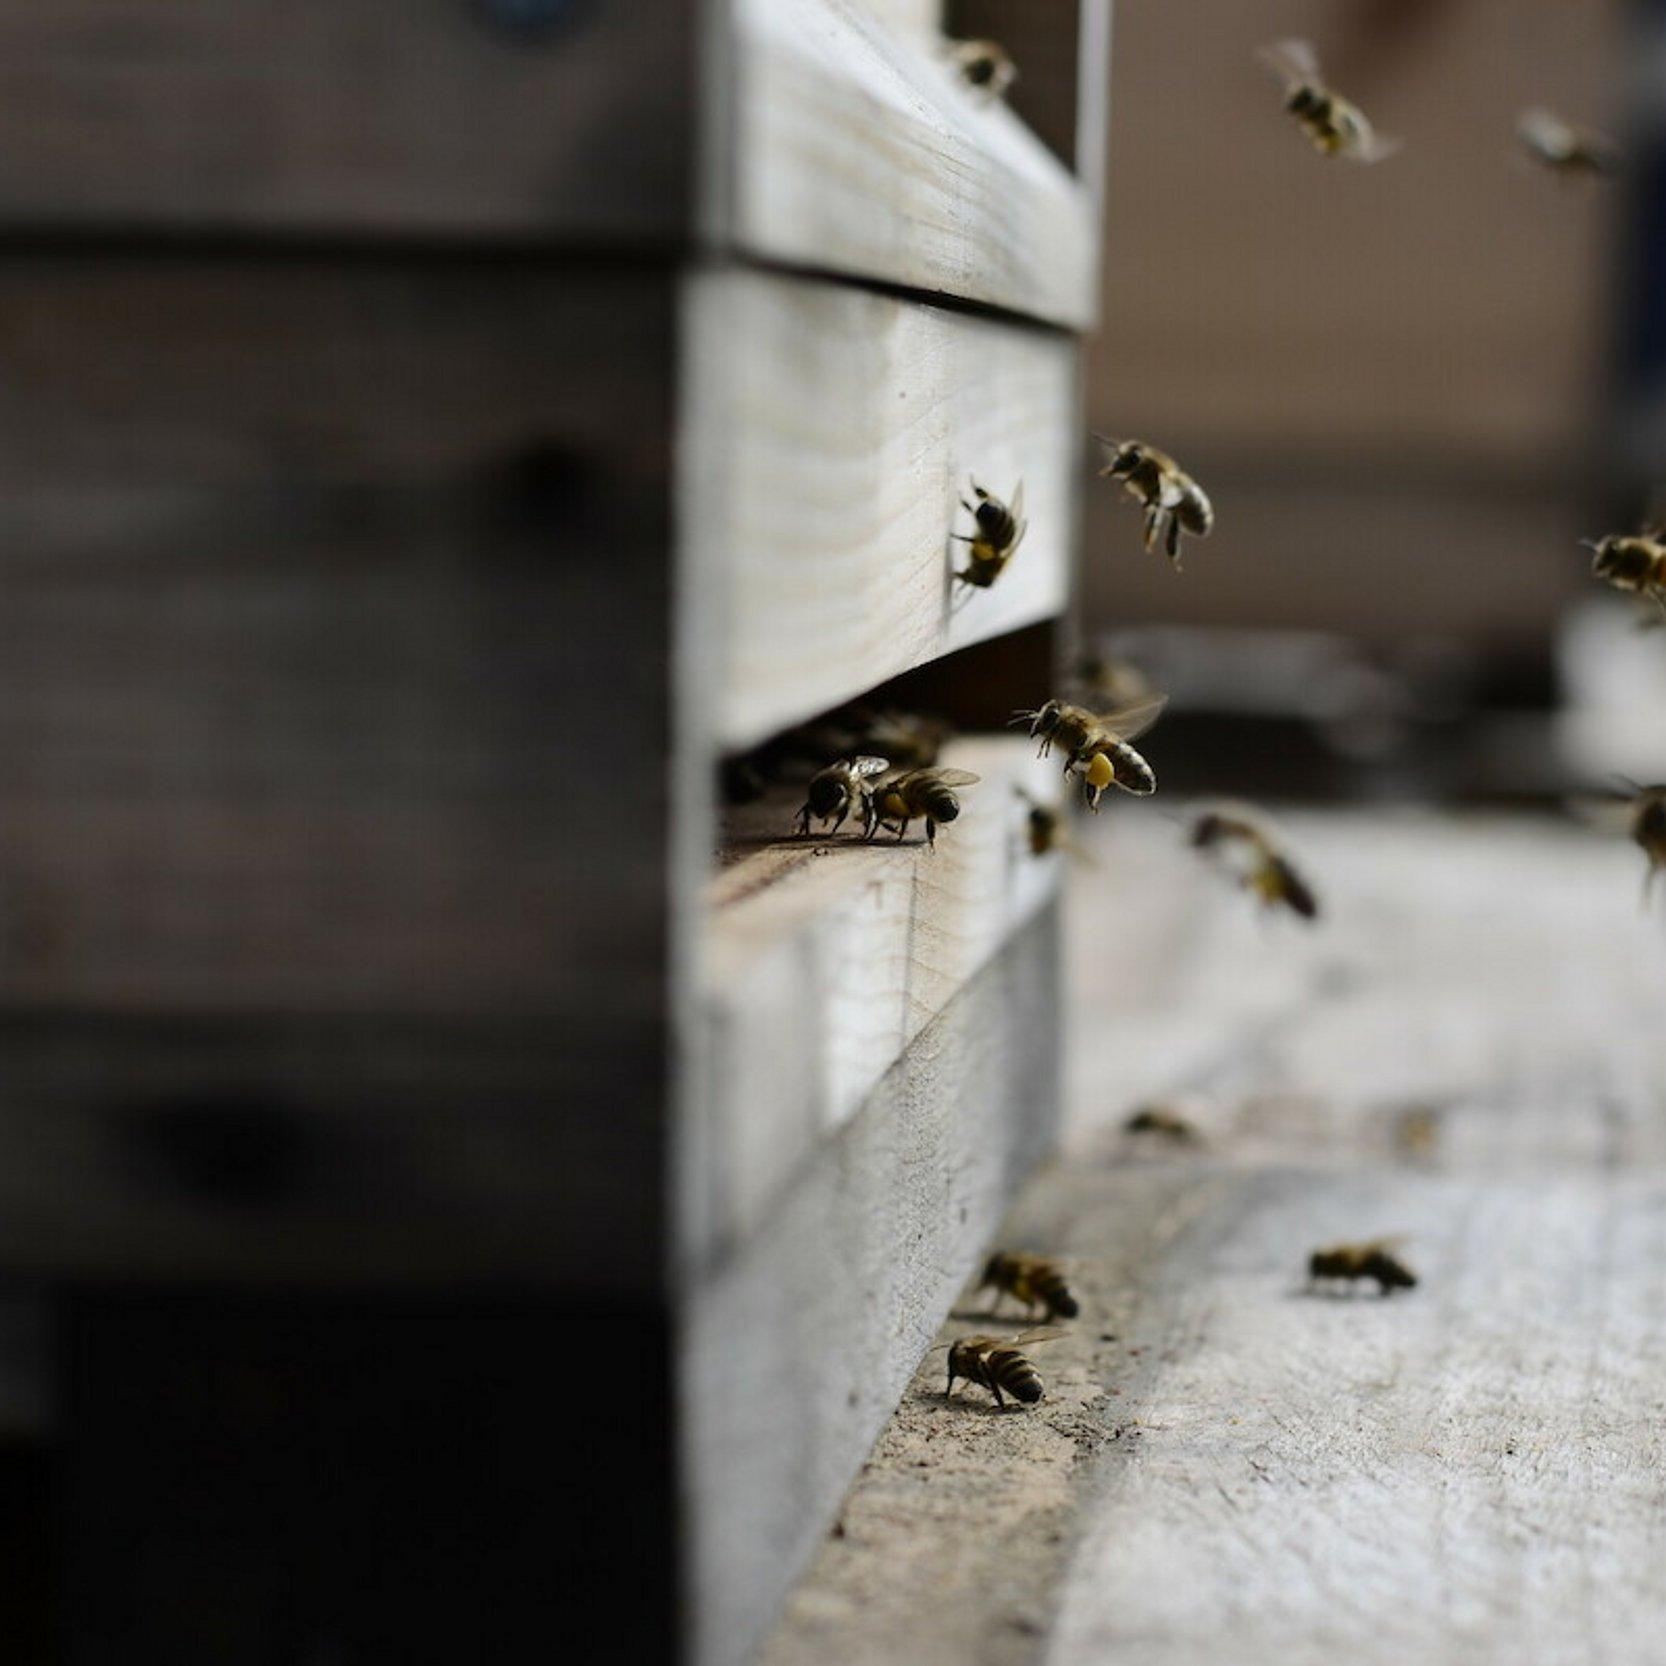 Teil eines Bienenstockes aus Holz, etliche Bienen fliegen ein und aus.